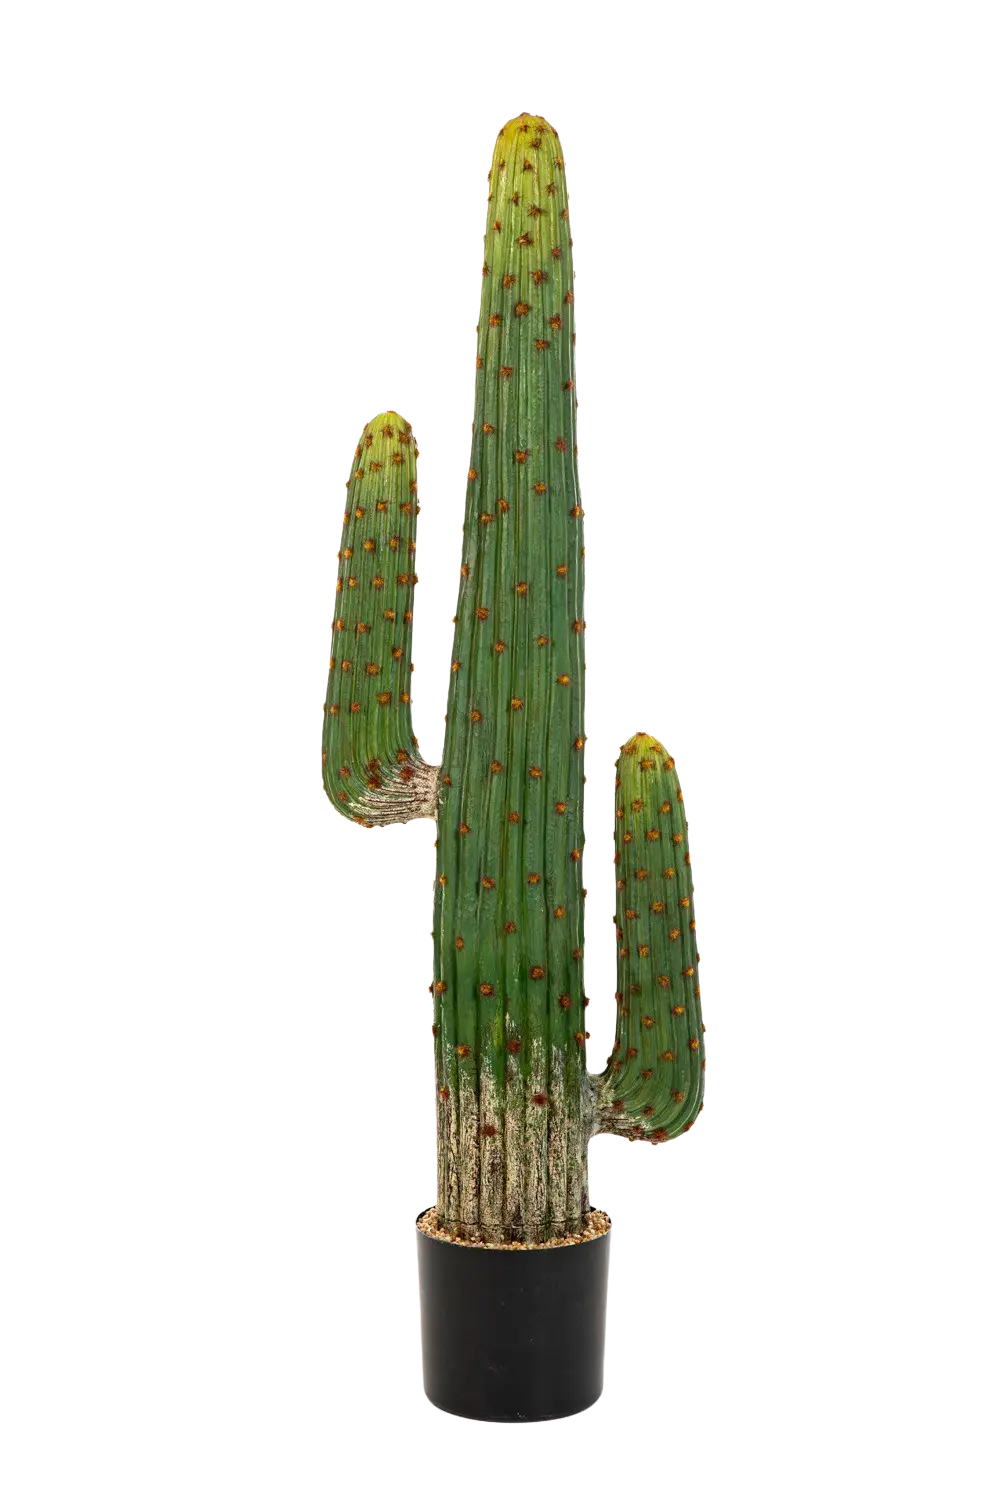 Künstlicher Kaktus - Hagen auf transparentem Hintergrund mit echt wirkenden Kunstblättern. Diese Kunstpflanze gehört zur Gattung/Familie der "Kakteen" bzw. "Kunst-Kakteen".